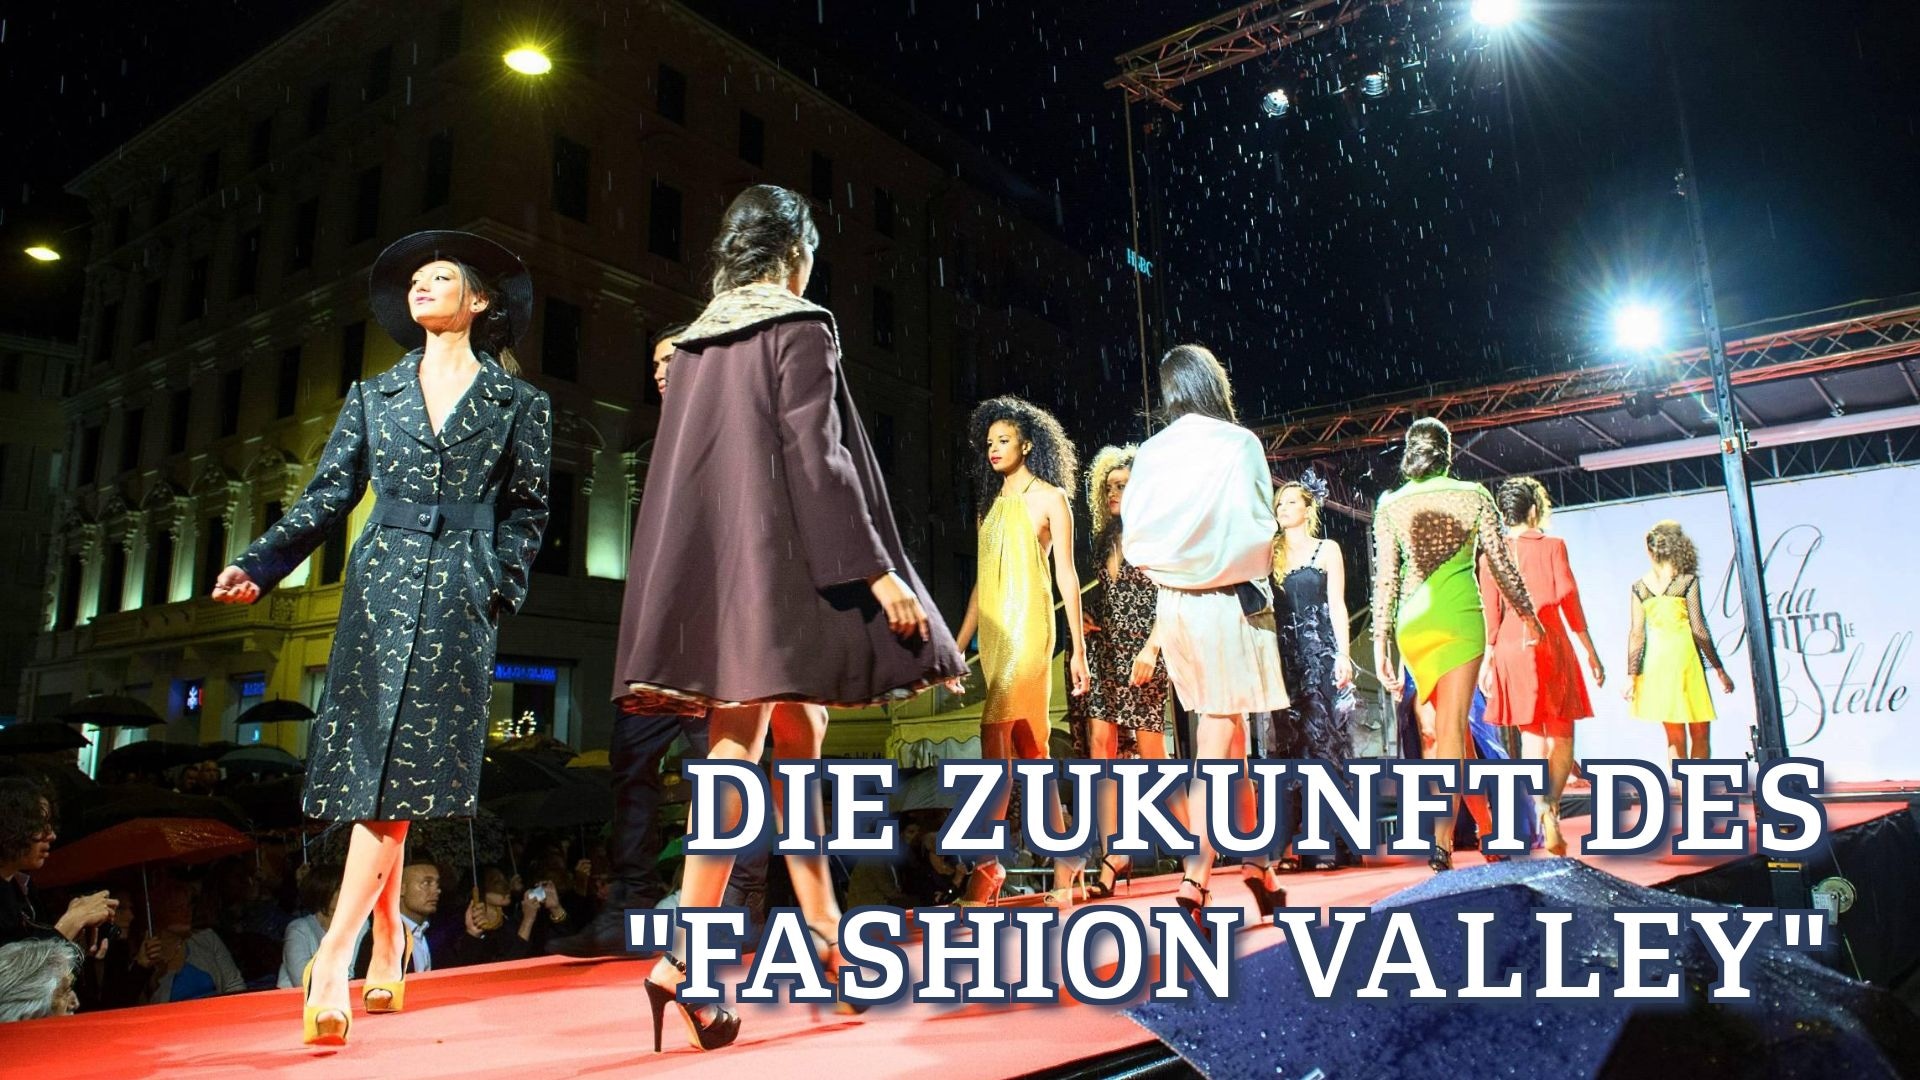 Die Zukunft des "Fashion Valley"